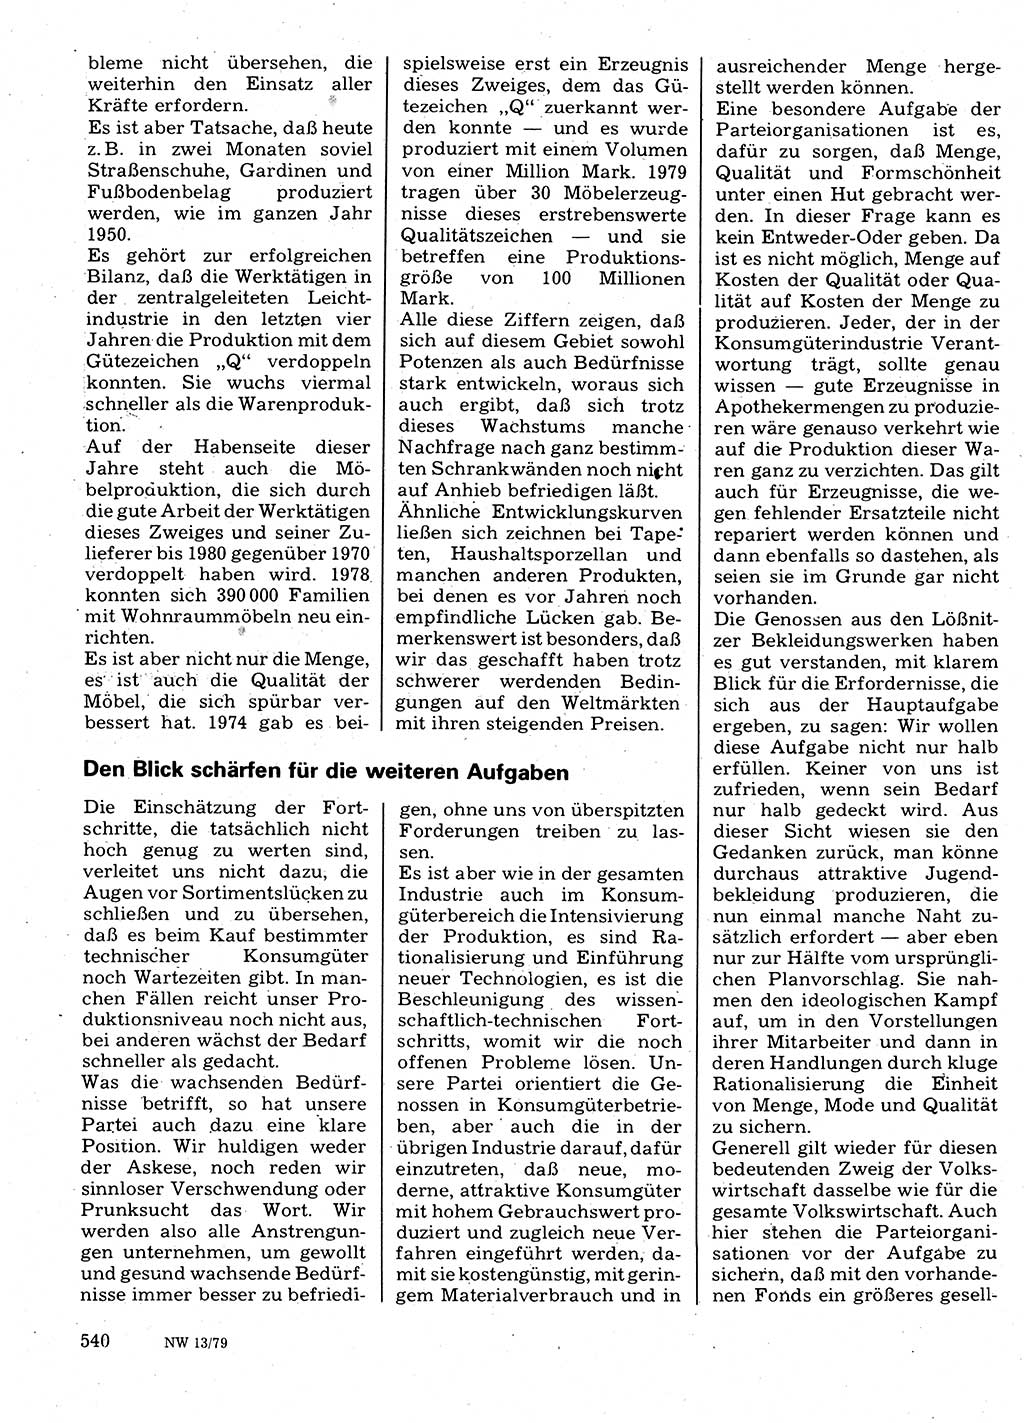 Neuer Weg (NW), Organ des Zentralkomitees (ZK) der SED (Sozialistische Einheitspartei Deutschlands) für Fragen des Parteilebens, 34. Jahrgang [Deutsche Demokratische Republik (DDR)] 1979, Seite 540 (NW ZK SED DDR 1979, S. 540)